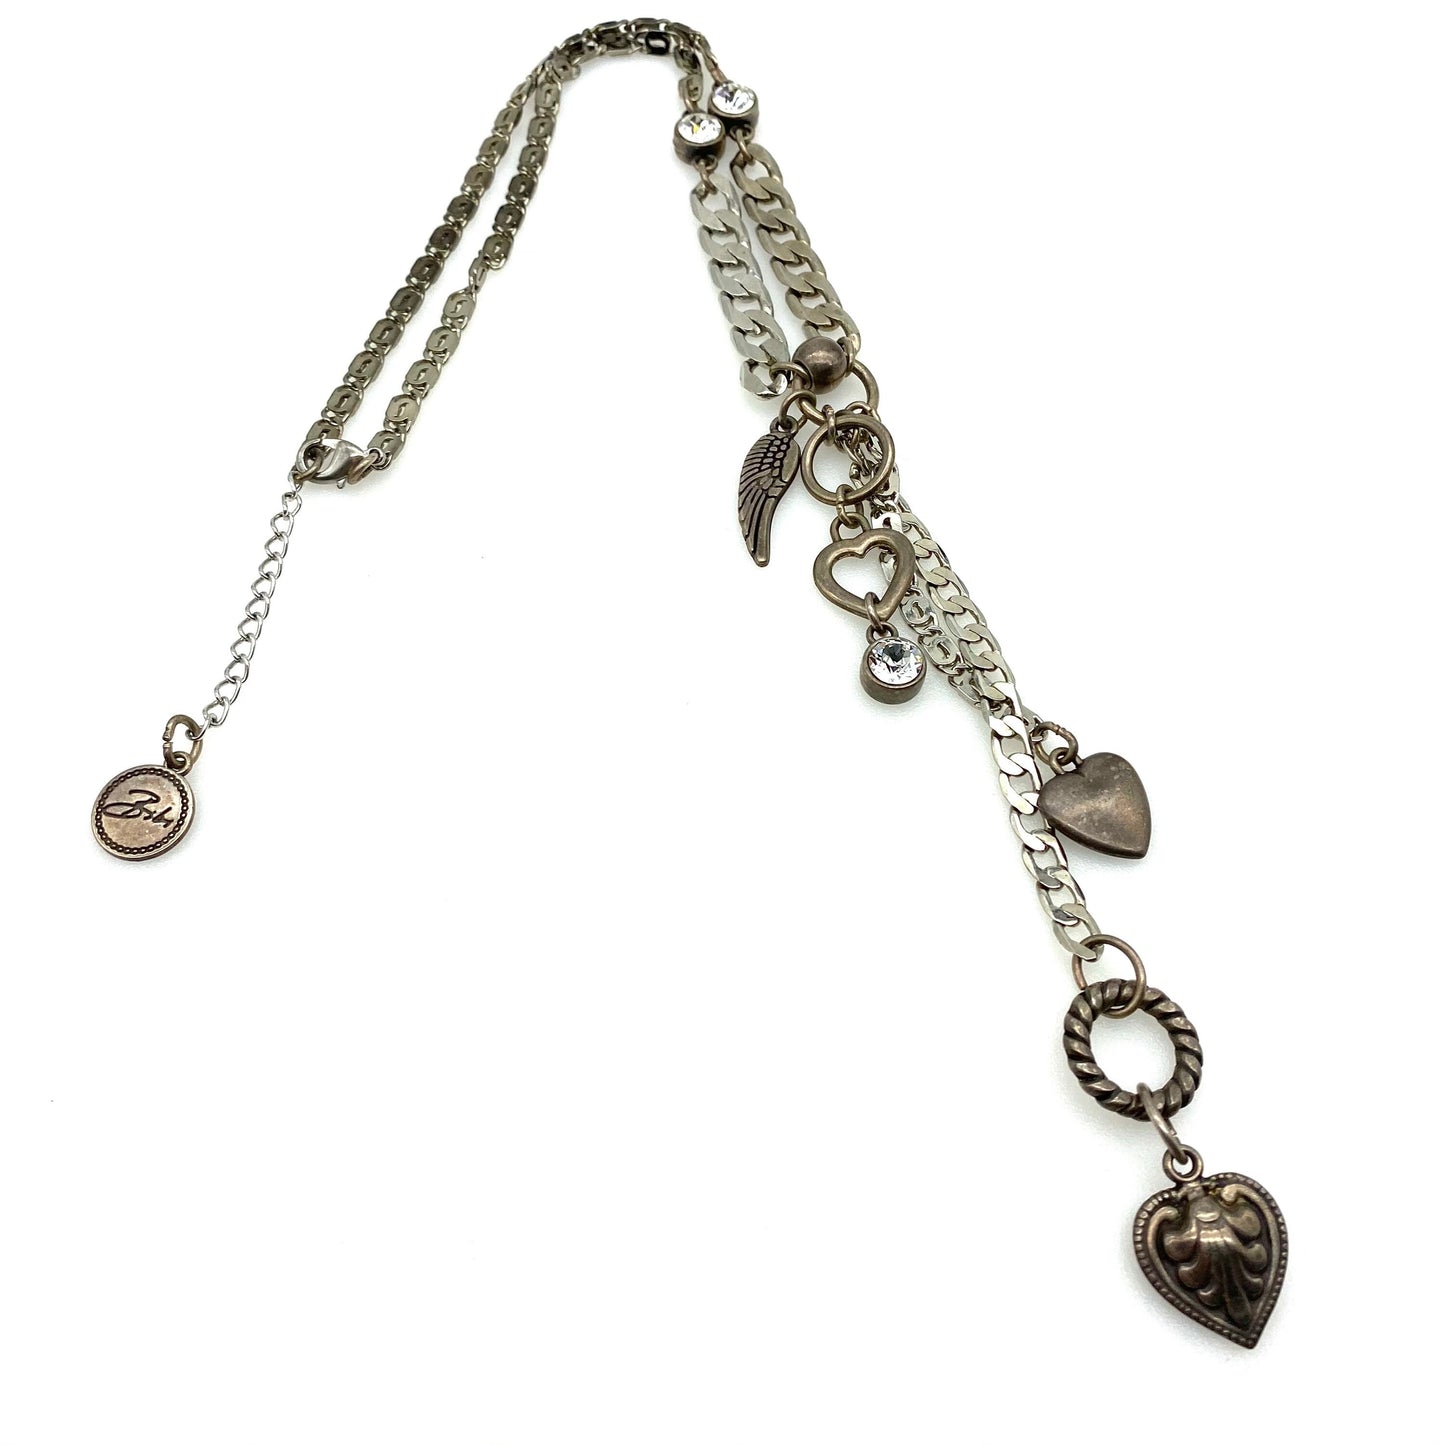 Bibi Bijoux Heart Charm Necklace with Swarovski Crystals